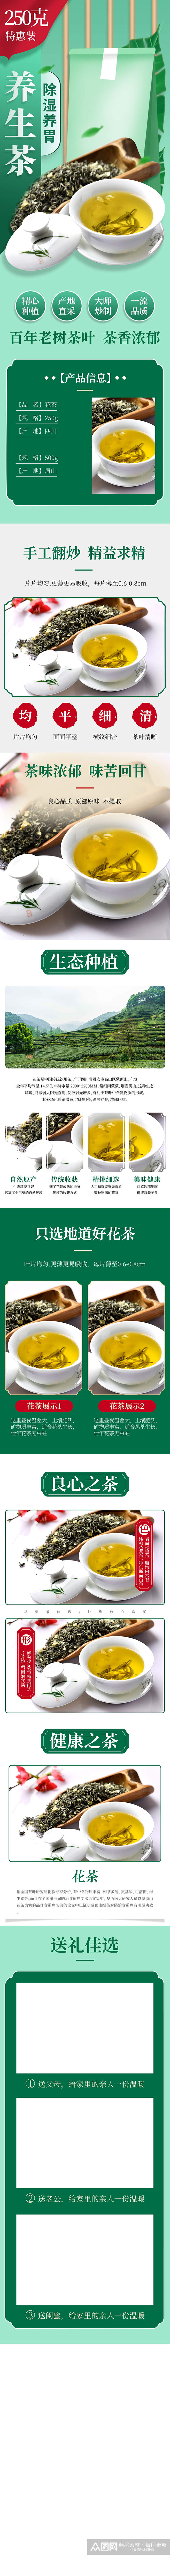 茶叶花茶绿茶红茶白茶食品茶饮水果蔬菜详情素材